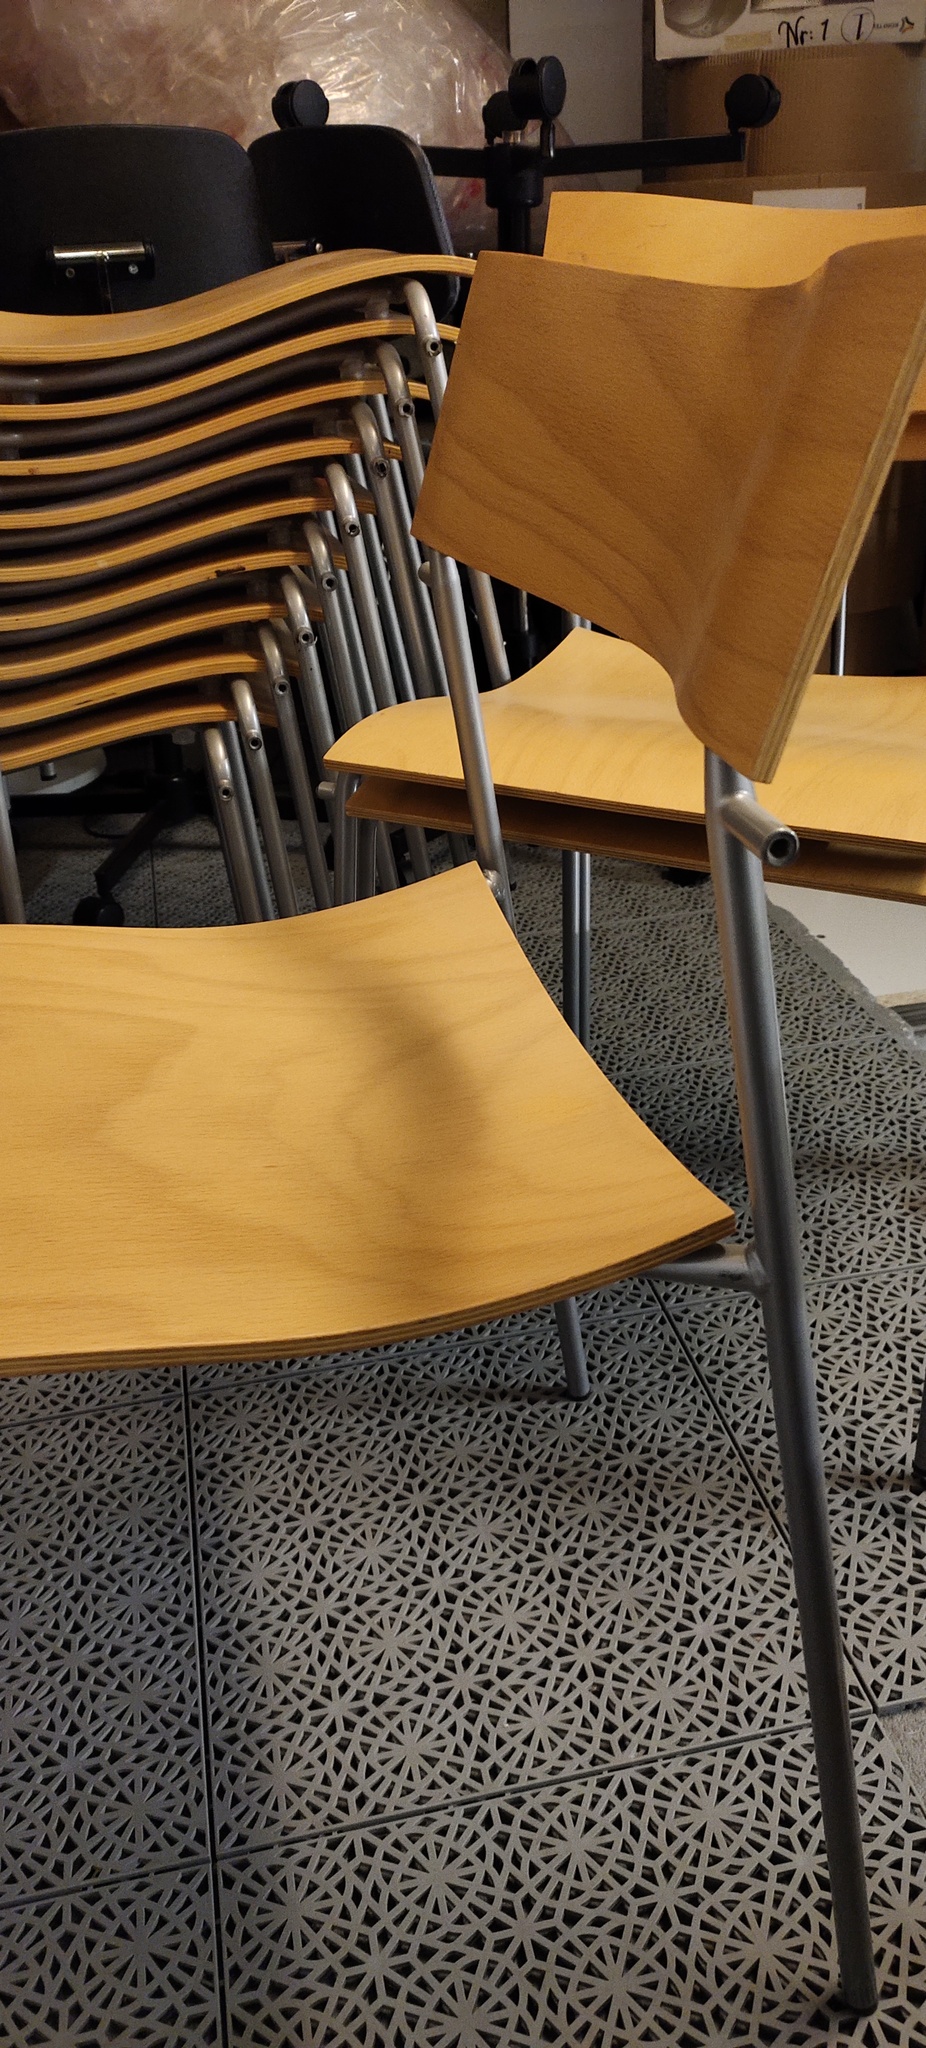 Hyr stolar, Lammhults Campus - Paket med 12